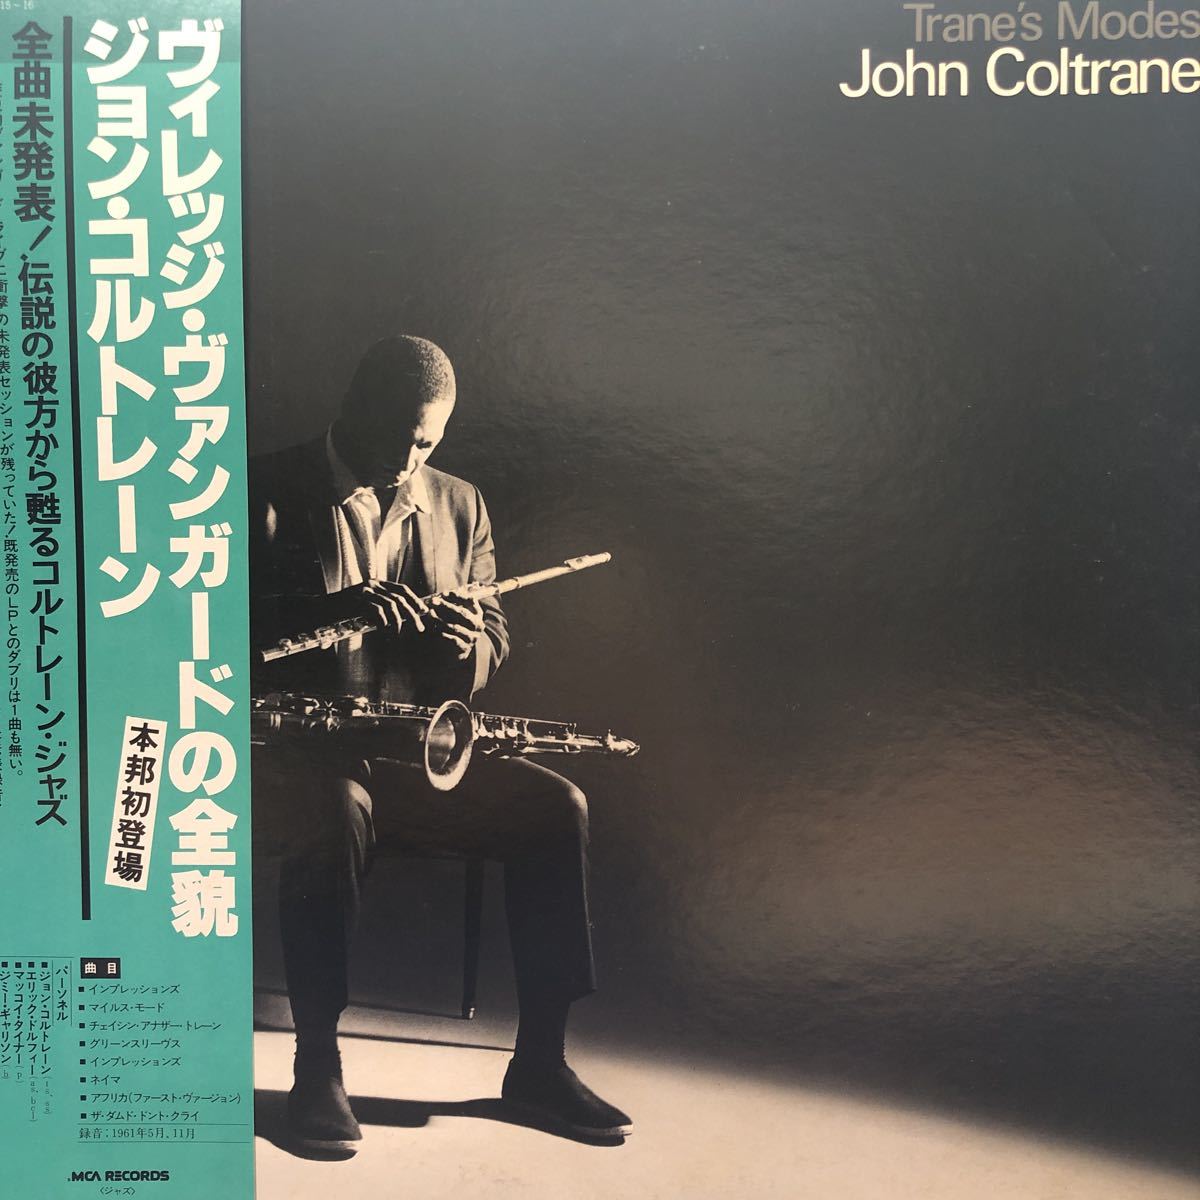 二枚組 John Coltrane ジョン・コルトレーン ヴィレッジ・ヴァンガードの全貌 帯付2LP 見開きジャケット レコード 5点以上落札で送料無料P_画像1